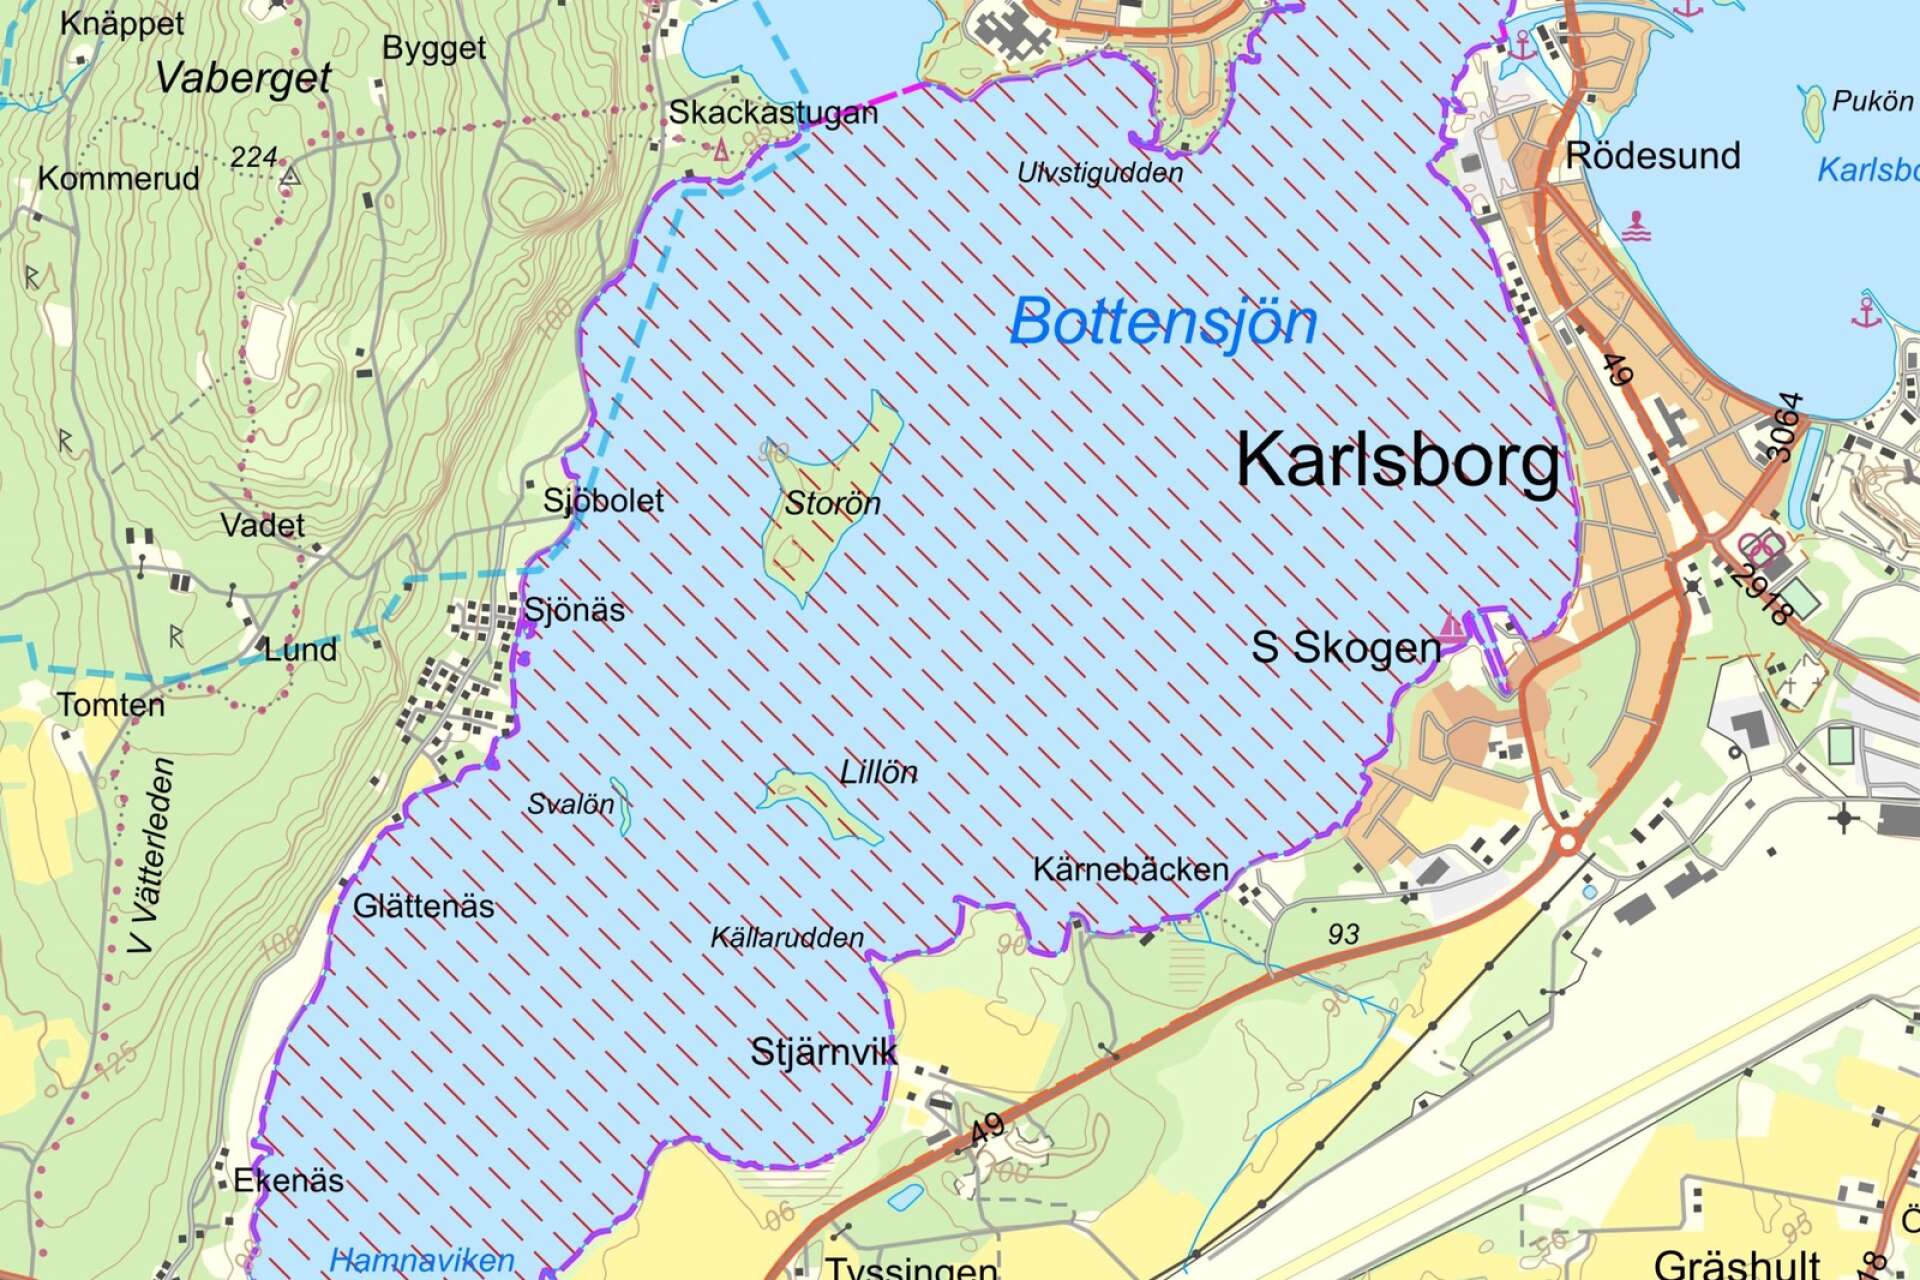 Rester av PFAS finns i fisk som fångas i Bottensjön i Karlsborgs kommun. PFAS påverkar även människors hälsa varför nya rekommendationer för konsumtion av Bottensjöfisken tagits fram. Den ska inte ätas mer än två, tre gånger om året.